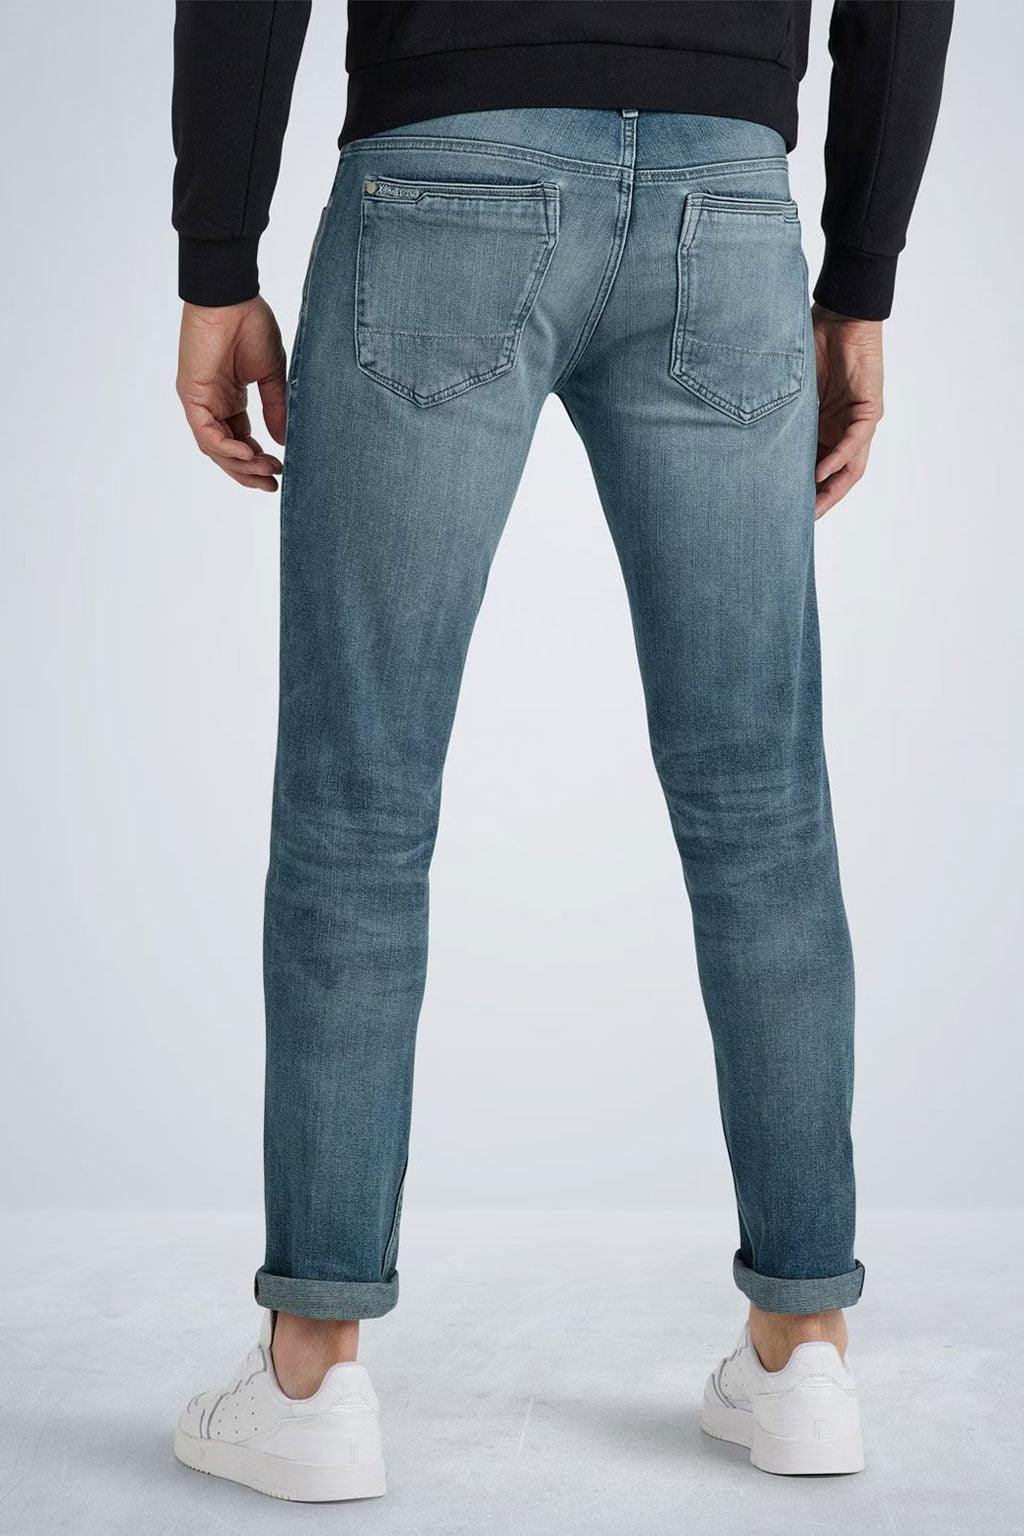 PME Legend jeans